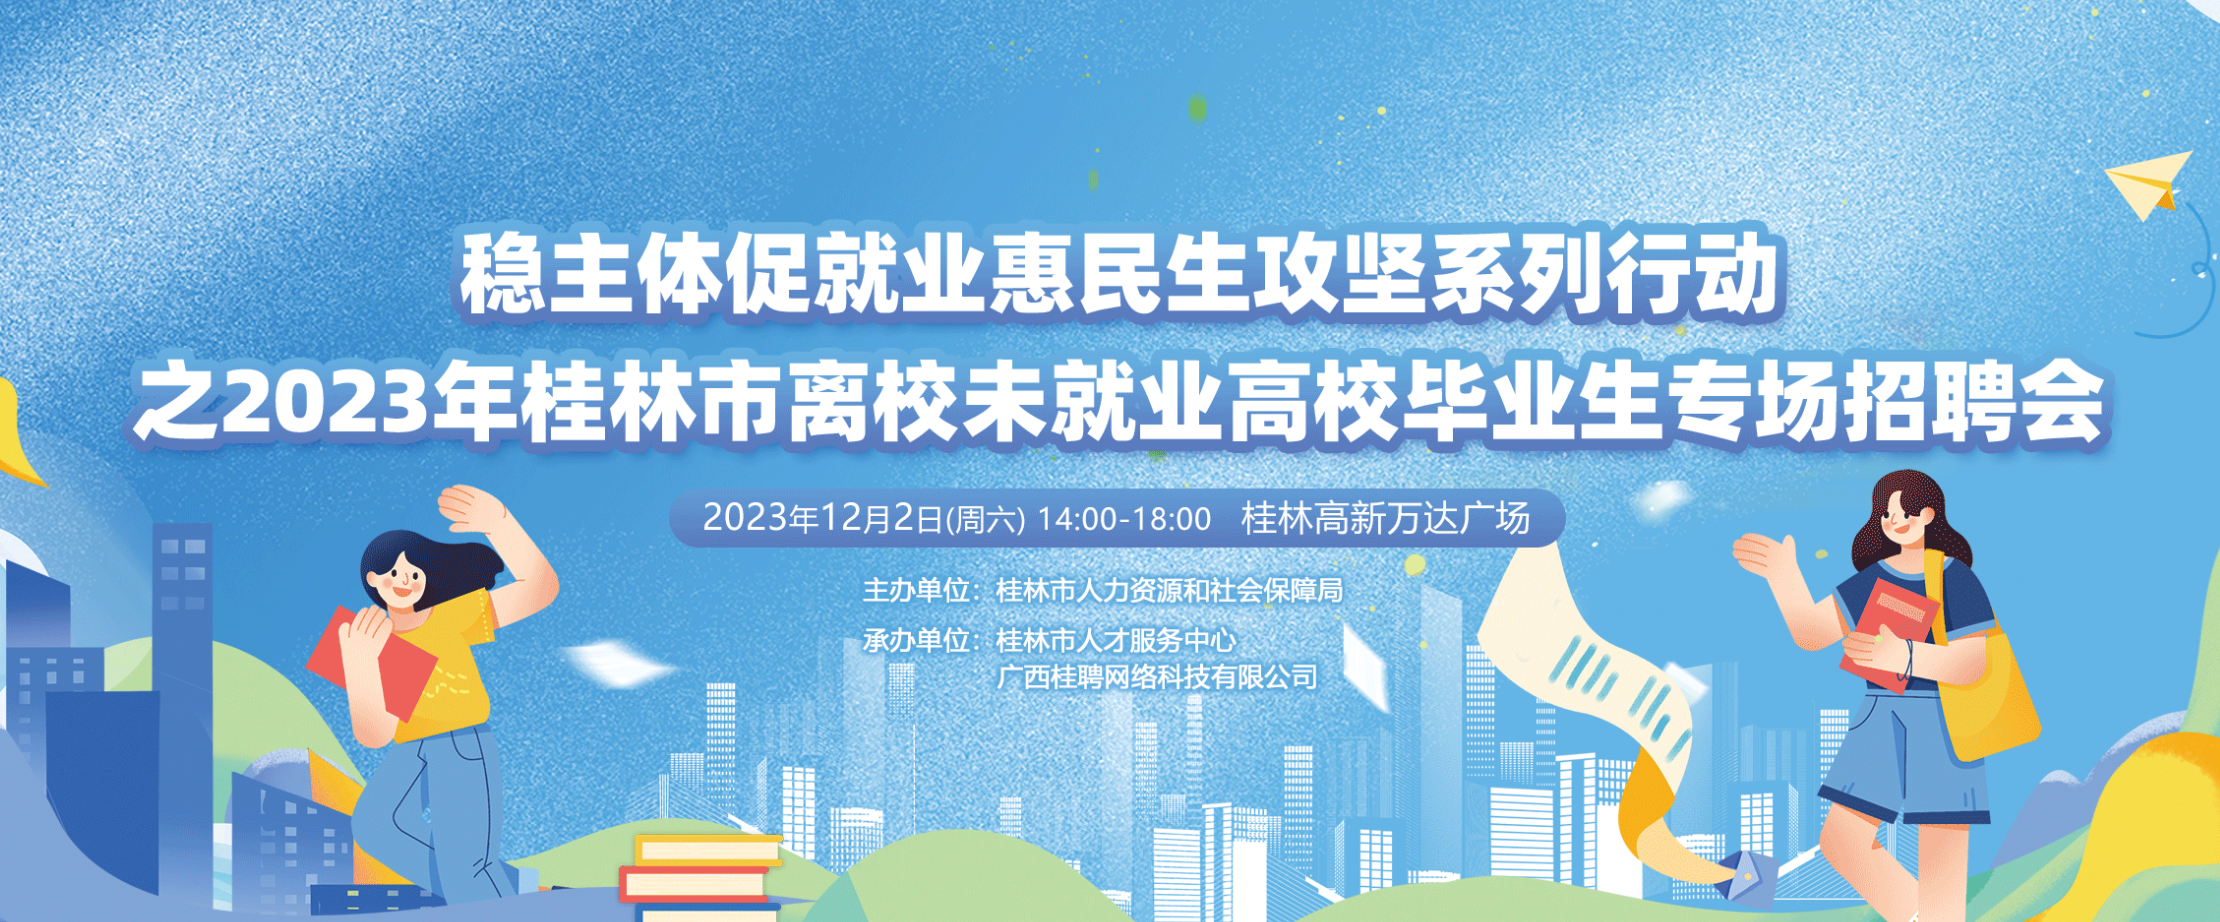 桂林2023年高新万达招聘会，12月2日综合行业招聘会，桂林市 2023 年稳主体促就业惠民生攻坚系